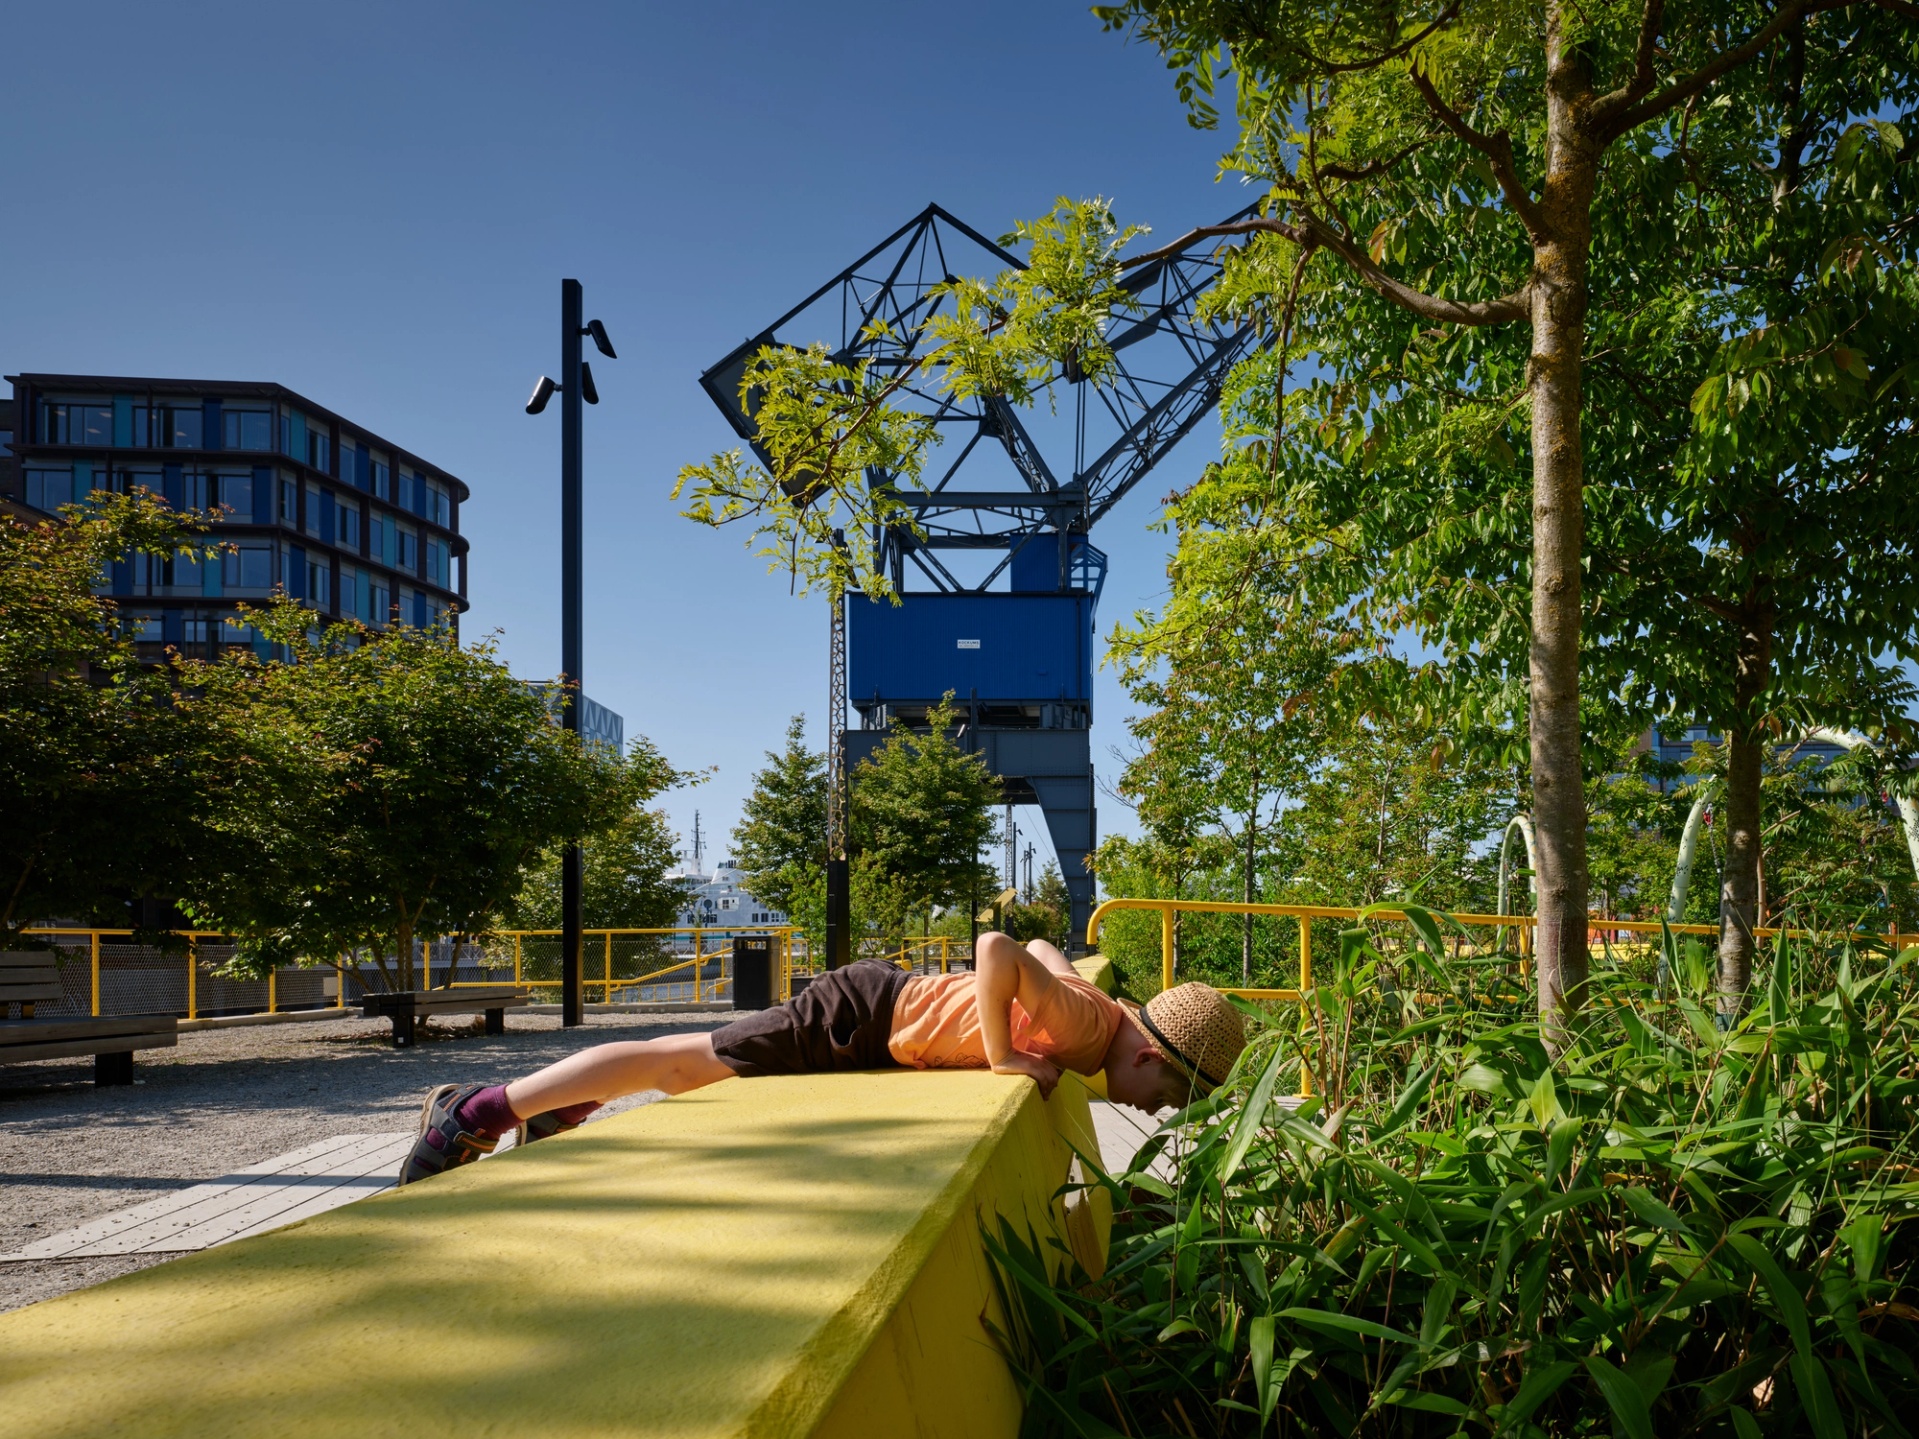 Barn utforskar Dockanparken i Helsingborg